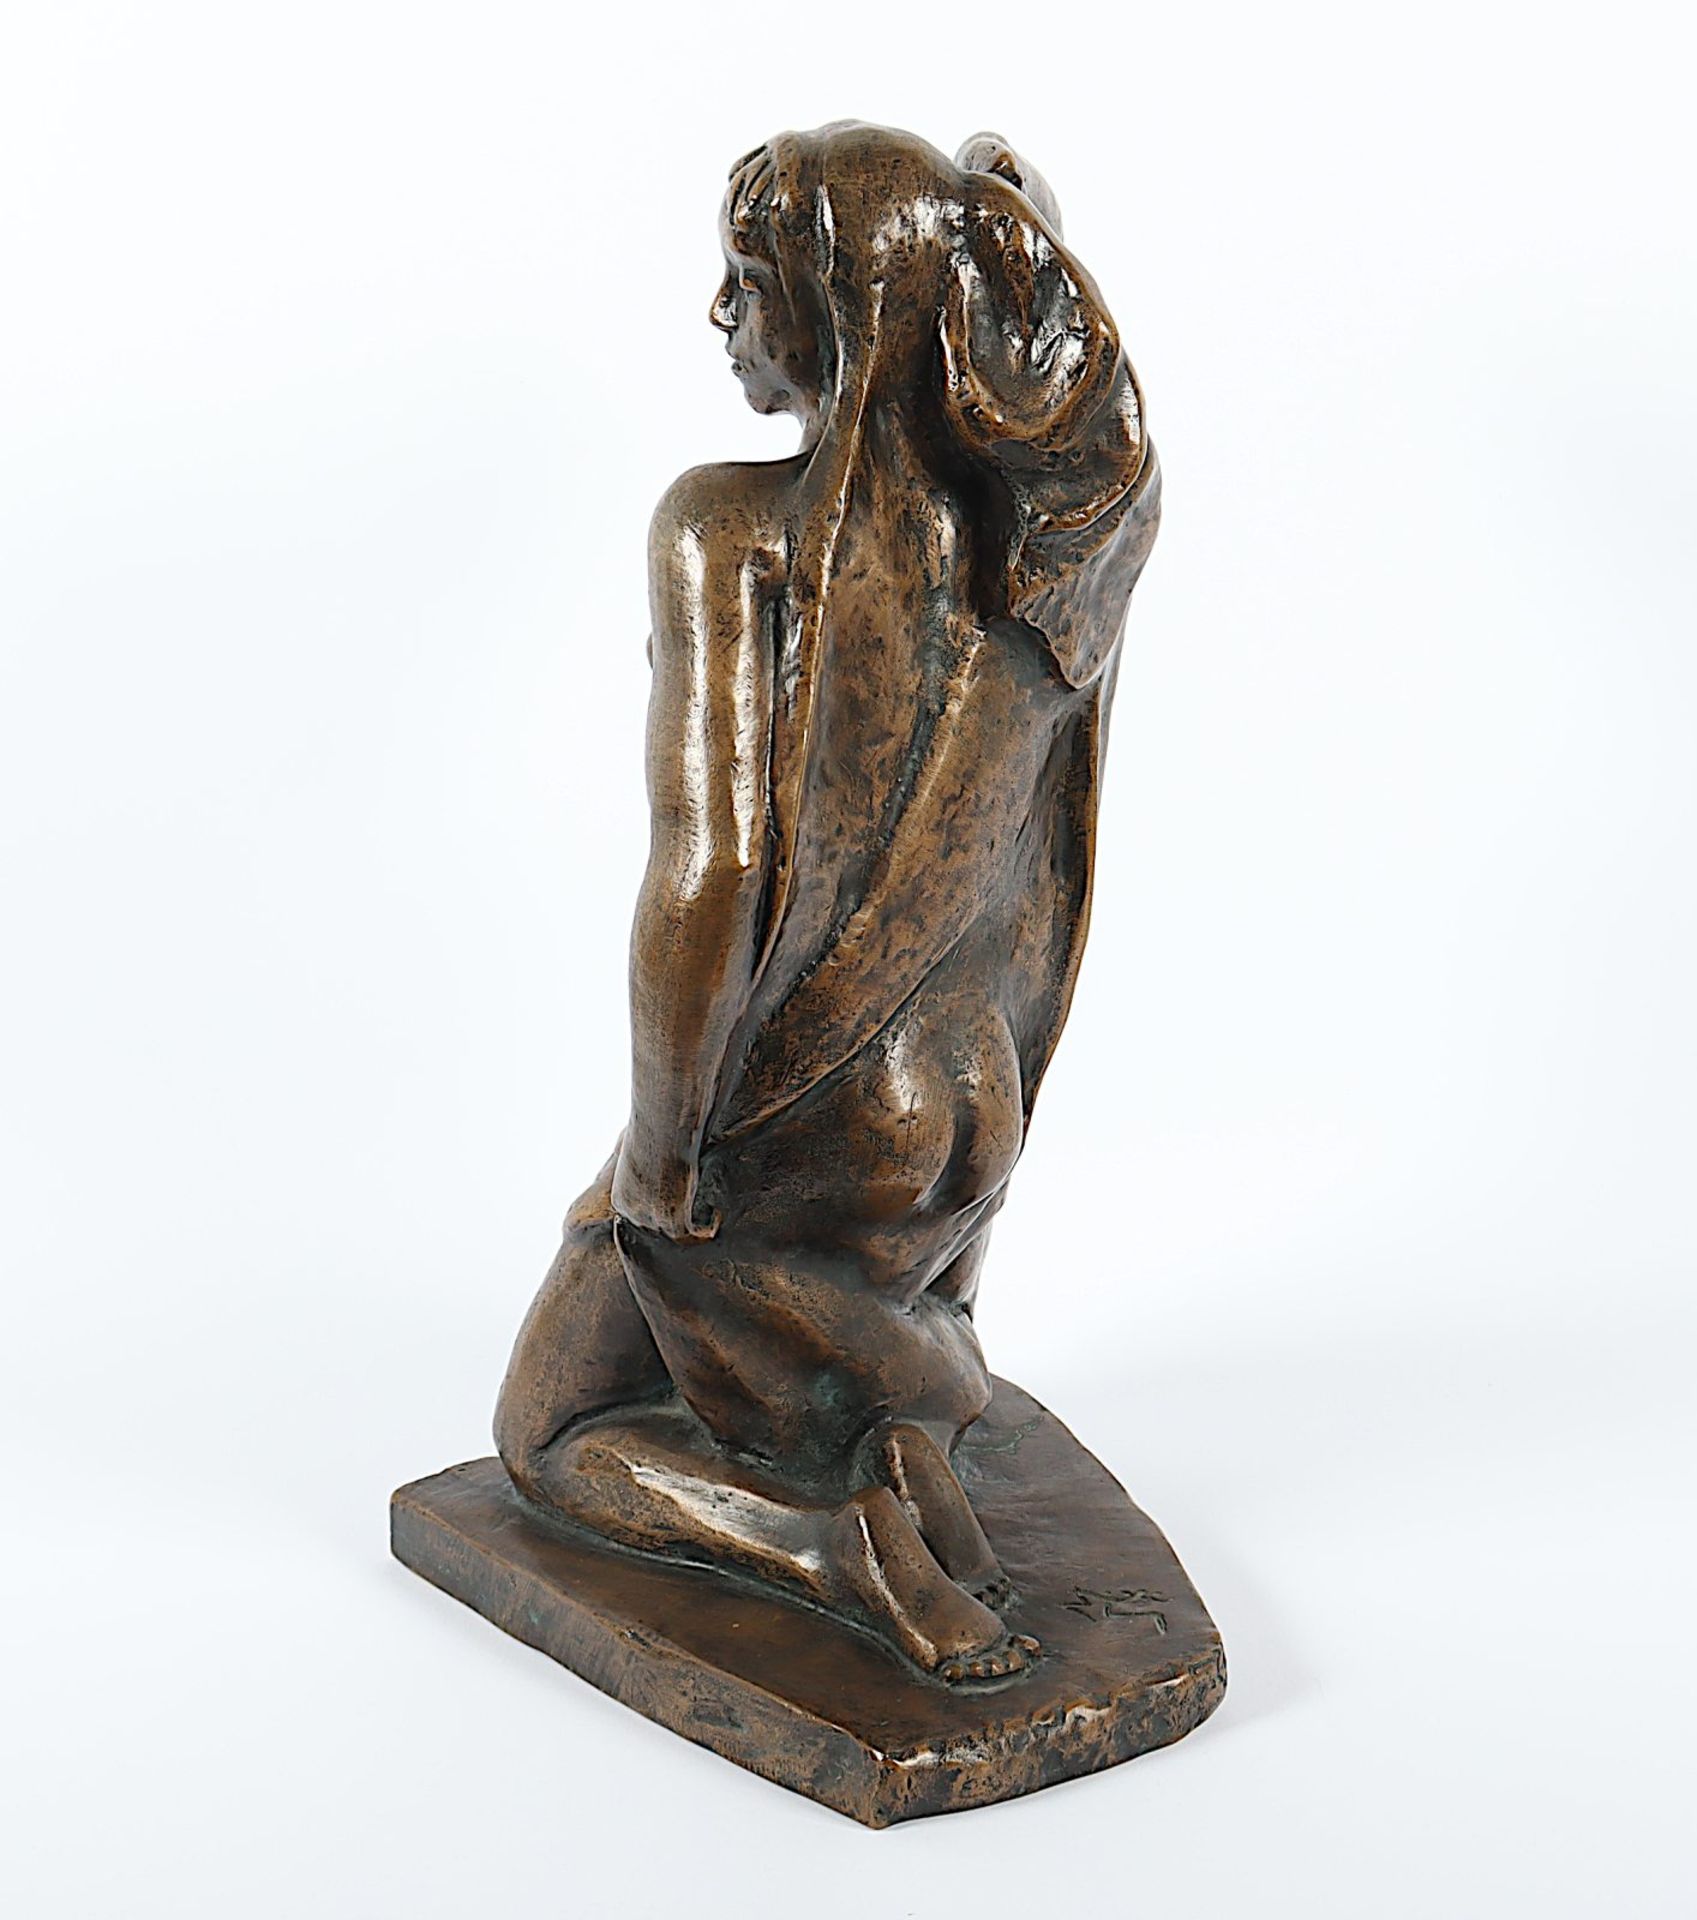 Steger, Milly (1881-1948), "Kleine Knieende", Bronze, um 1934 - Image 6 of 8